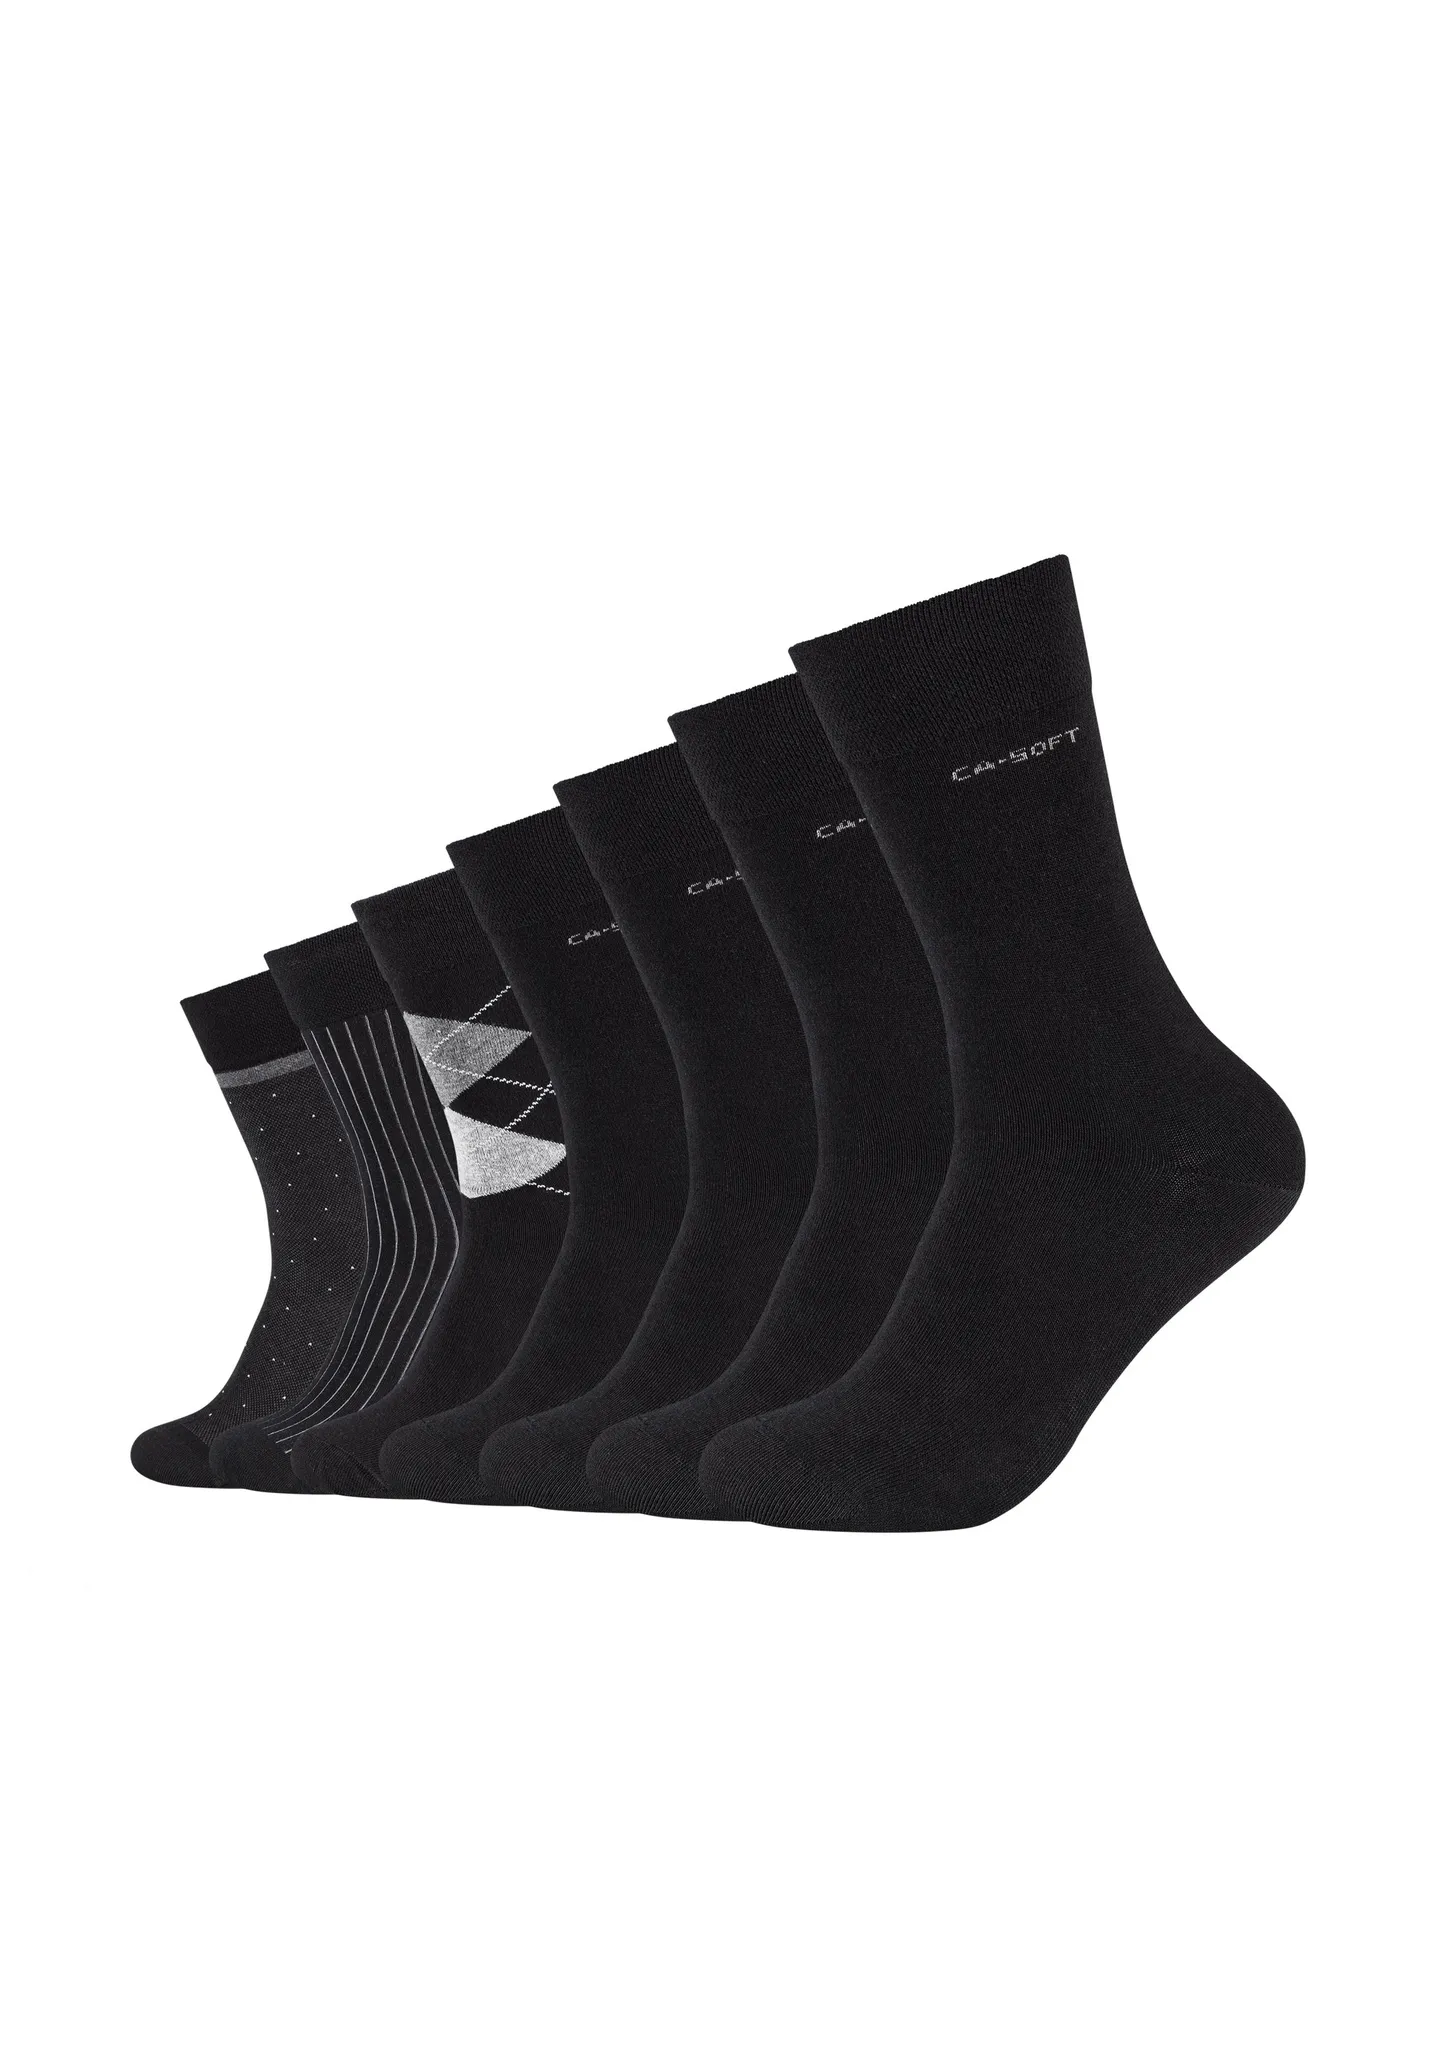 Camano Socken 7er-Pack ca-soft weichem mit